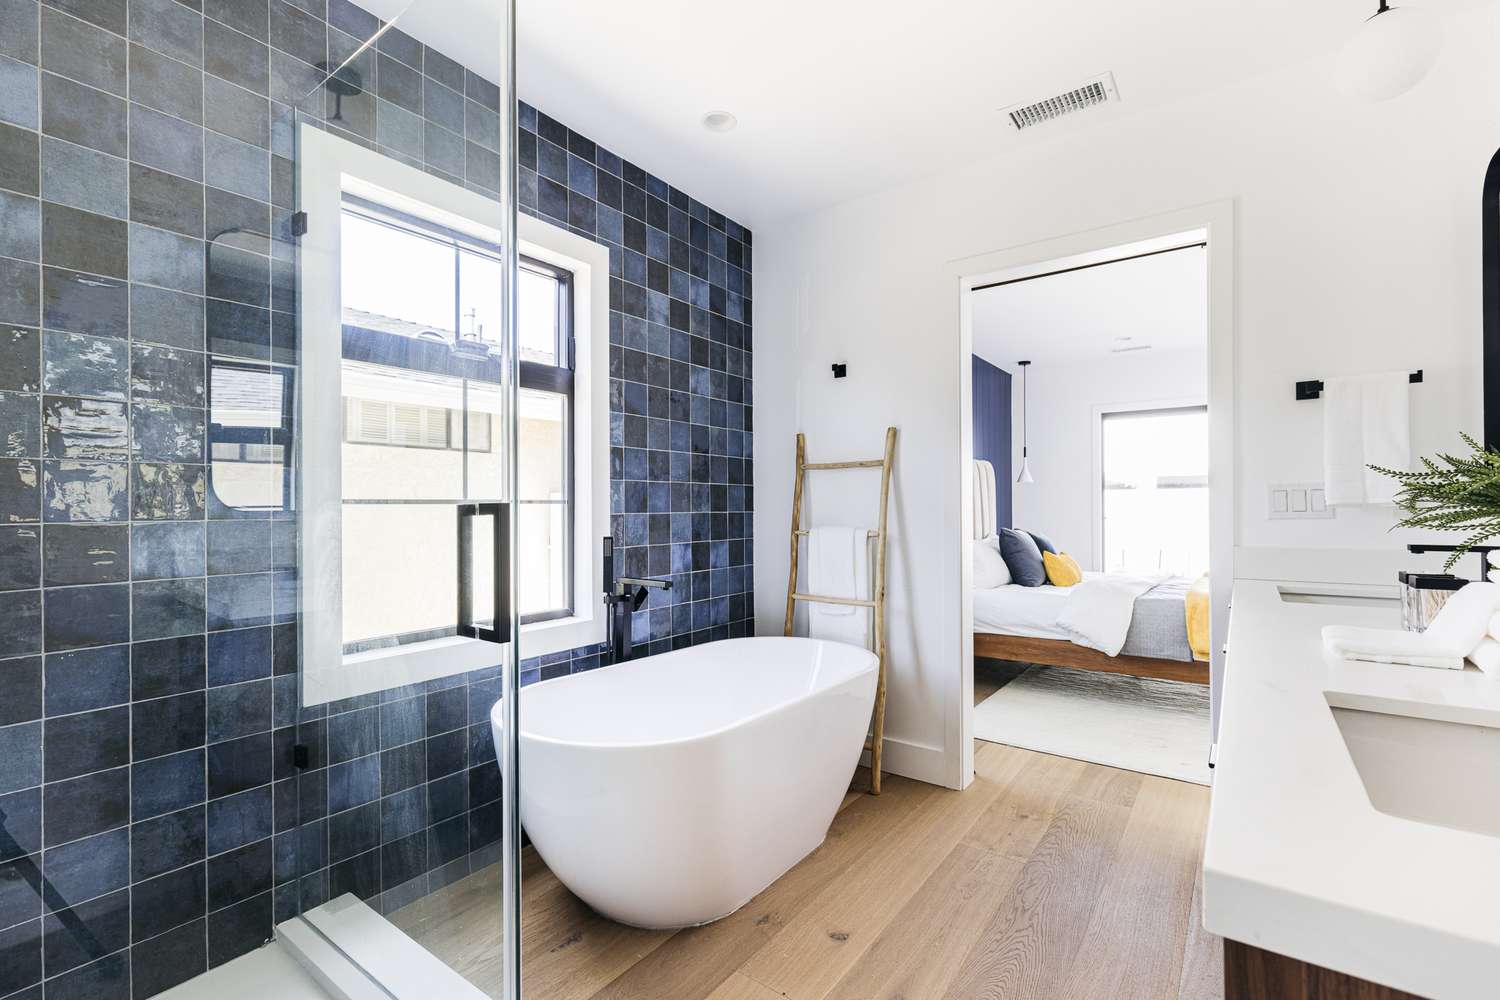 Bañera independiente junto a una pared de azulejos azules en un baño tipo spa